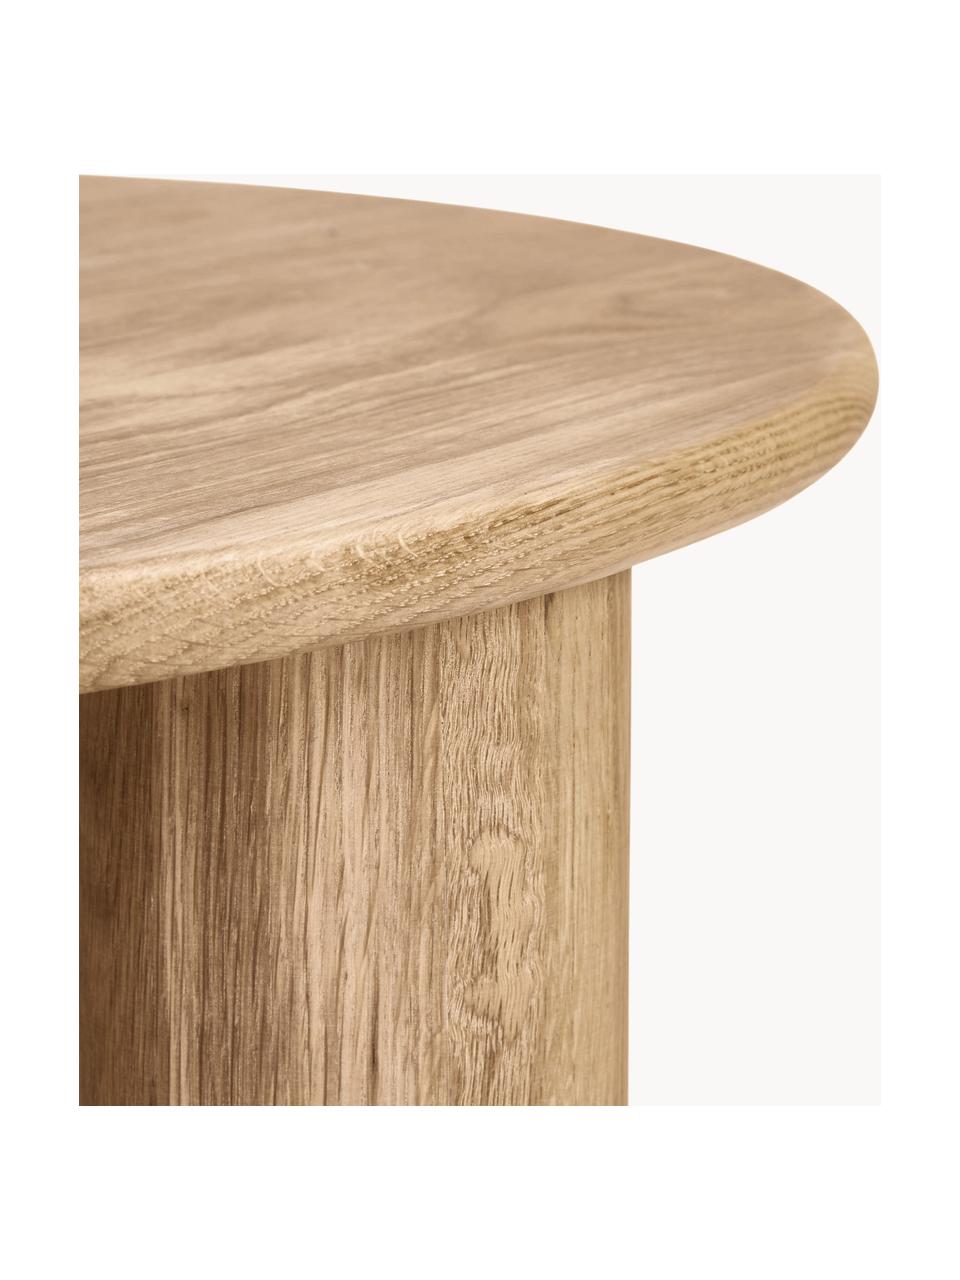 Okrúhly konferenčný stolík z dubového dreva Didi, Masívne dubové drevo, ošetrené olejom, Dubové drevo, Ø 80 cm